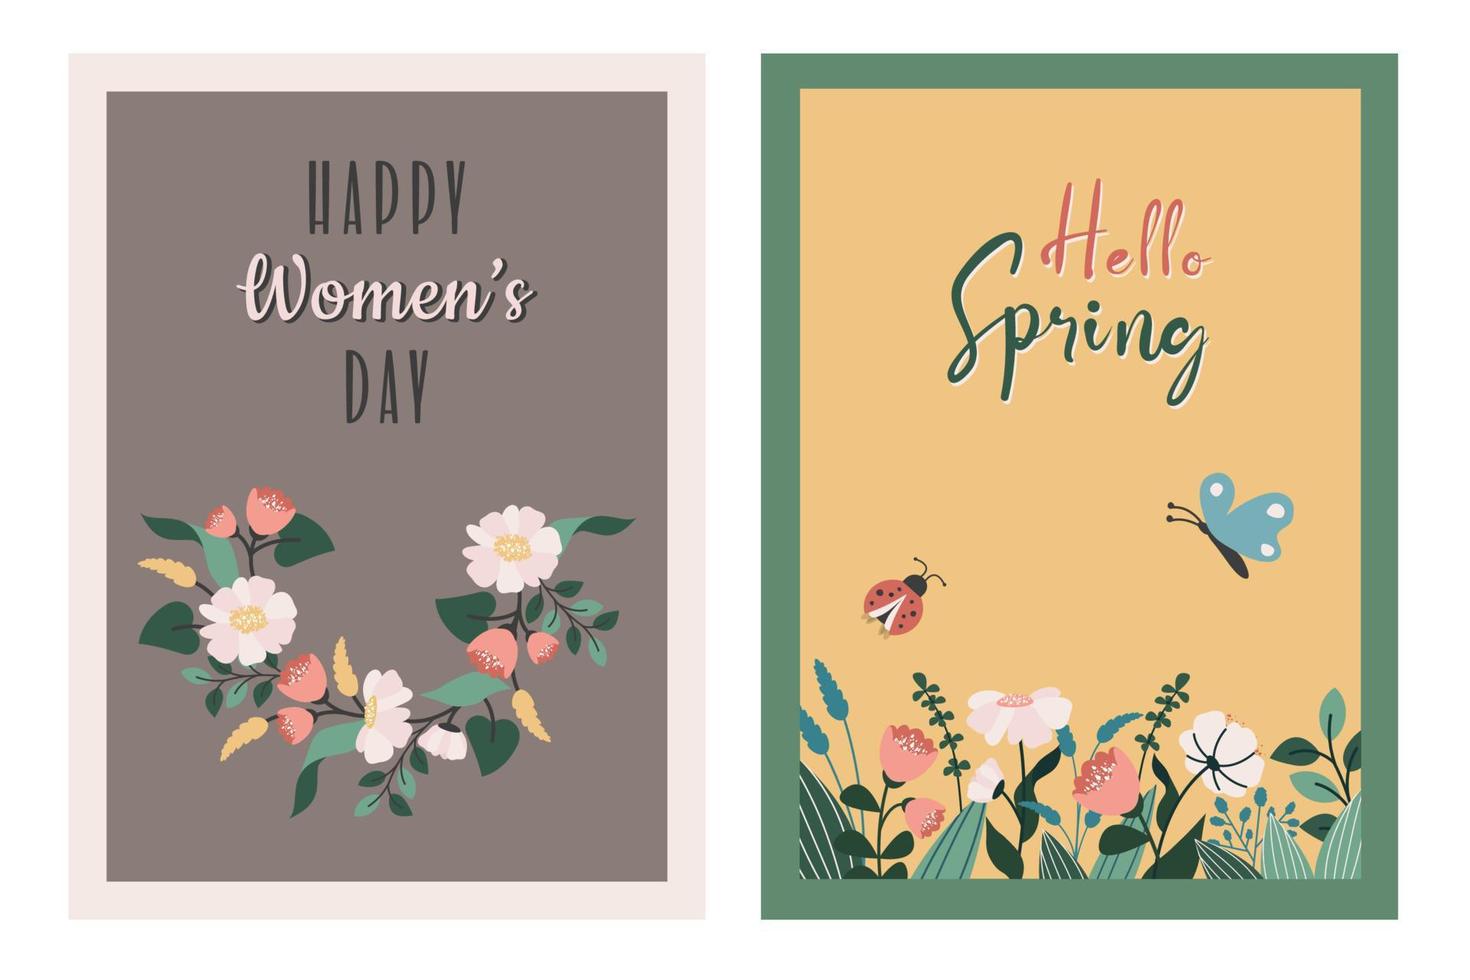 conjunto de De las mujeres día saludo tarjeta, marzo 8, cumpleaños, de la madre día. primavera antecedentes con flores, mariposa, mariquita, floral guirnalda. De las mujeres día póster. vector mano dibujado plano ilustración